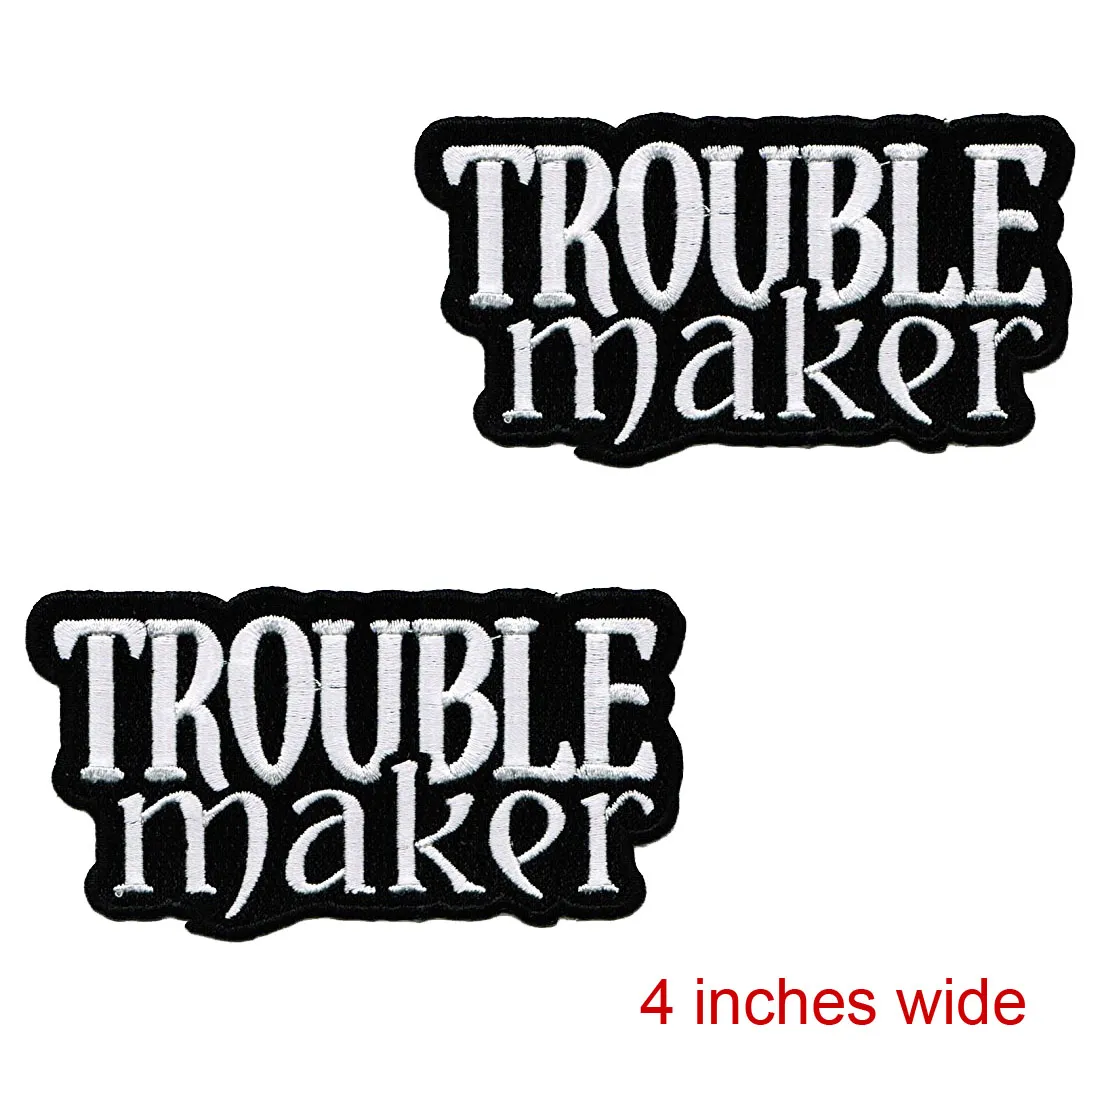 Aangepast de goedkope lage prijs met problemen maker patch geborduurde rebellen ijzer-on gevaarlijke logo gratis verzending